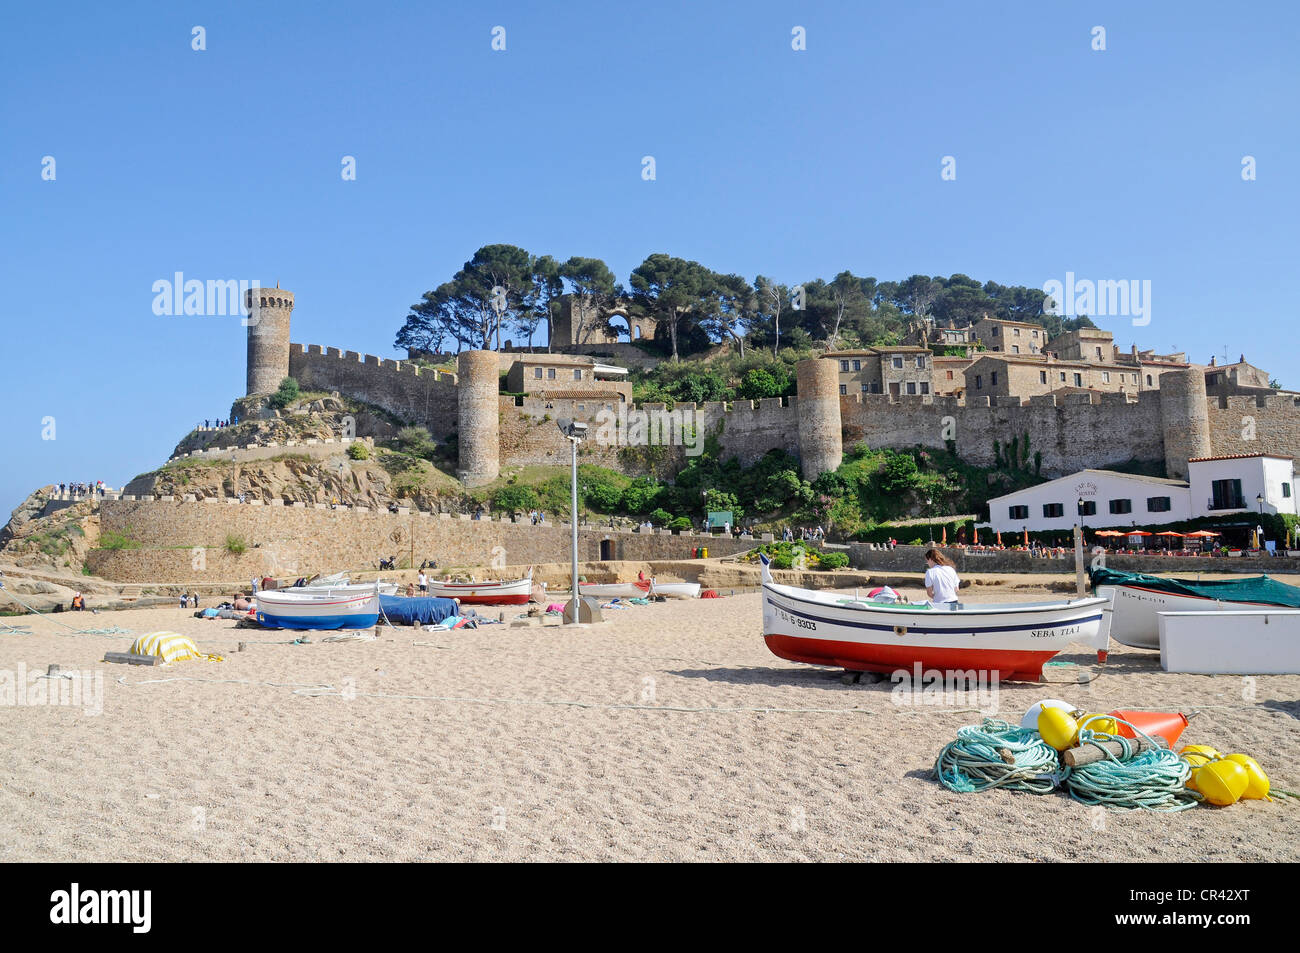 Barche, spiaggia, il castello di Villa Vella, città vecchia, villaggio costiero di Tossa de Mar, Costa Brava Catalogna, Europa Foto Stock